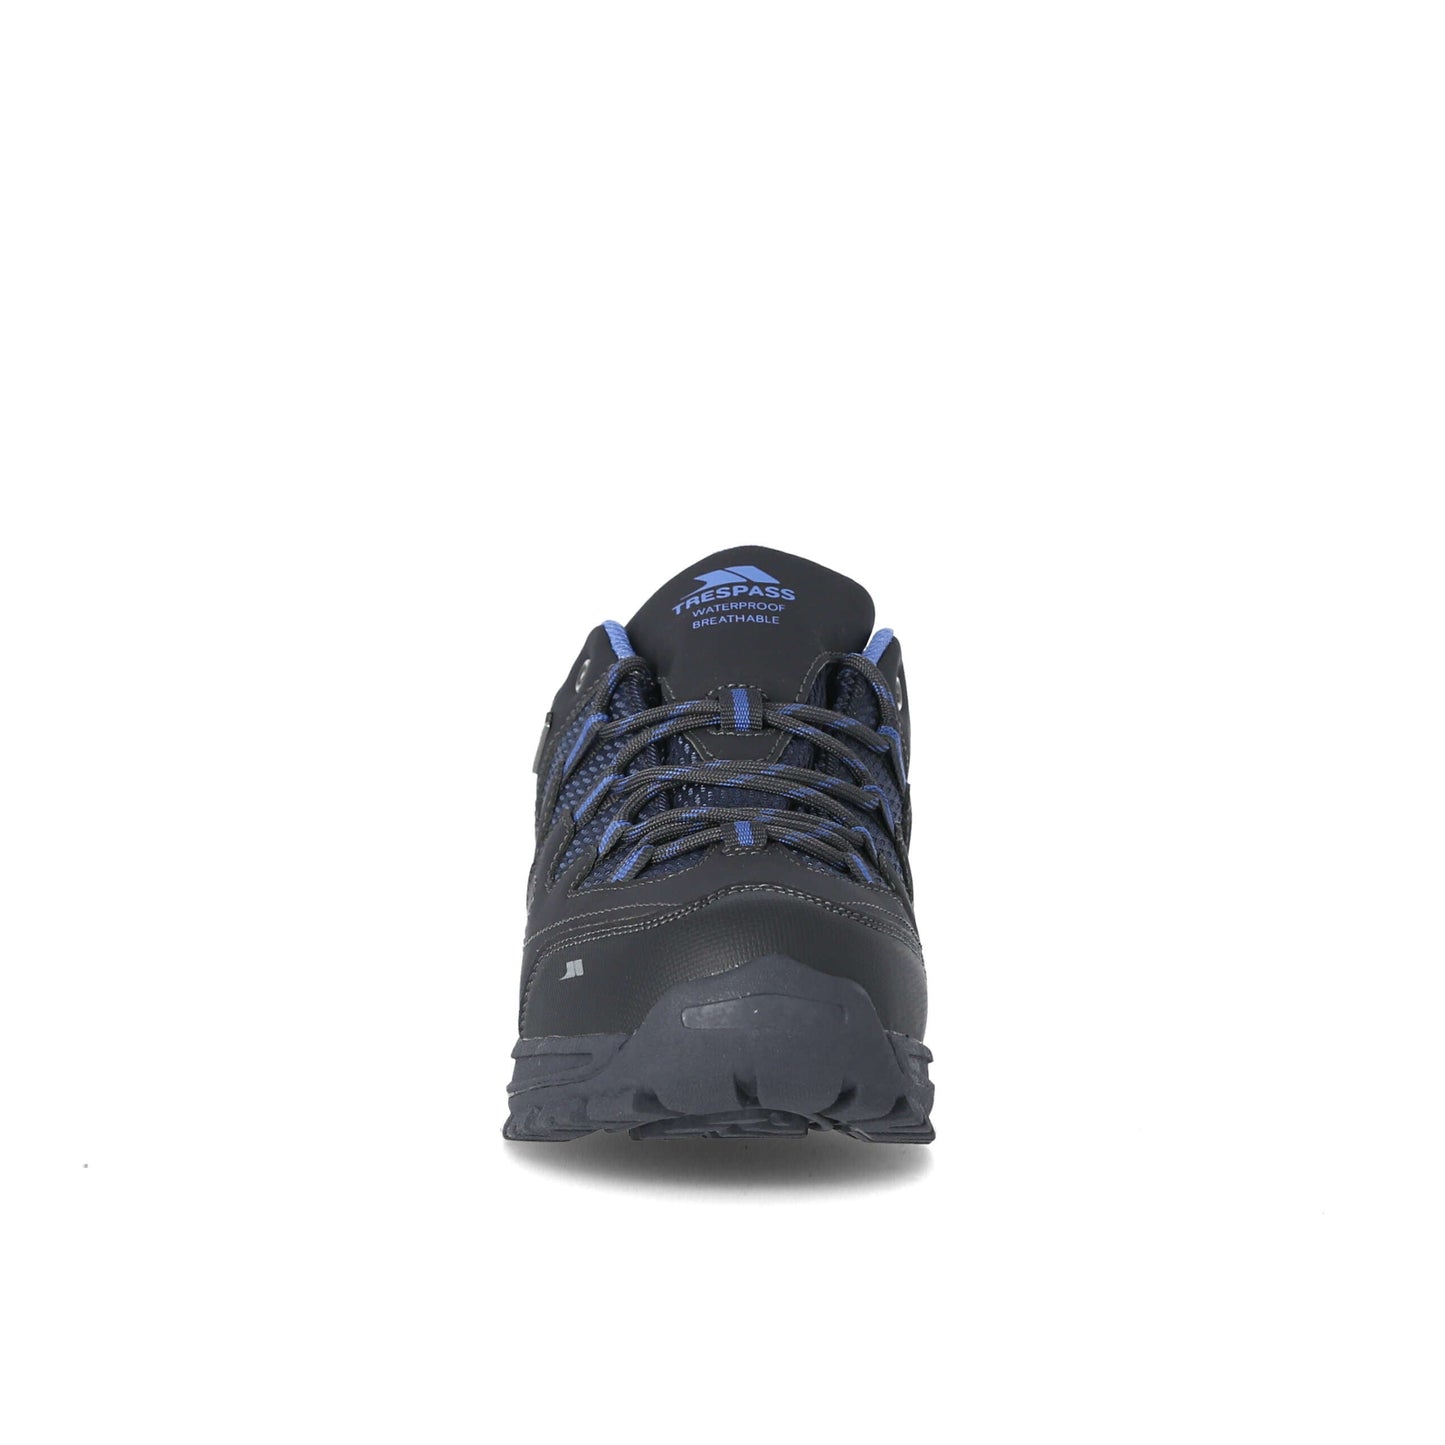 Mitzi - Women's Waterproof Walking Shoes - Charcoal